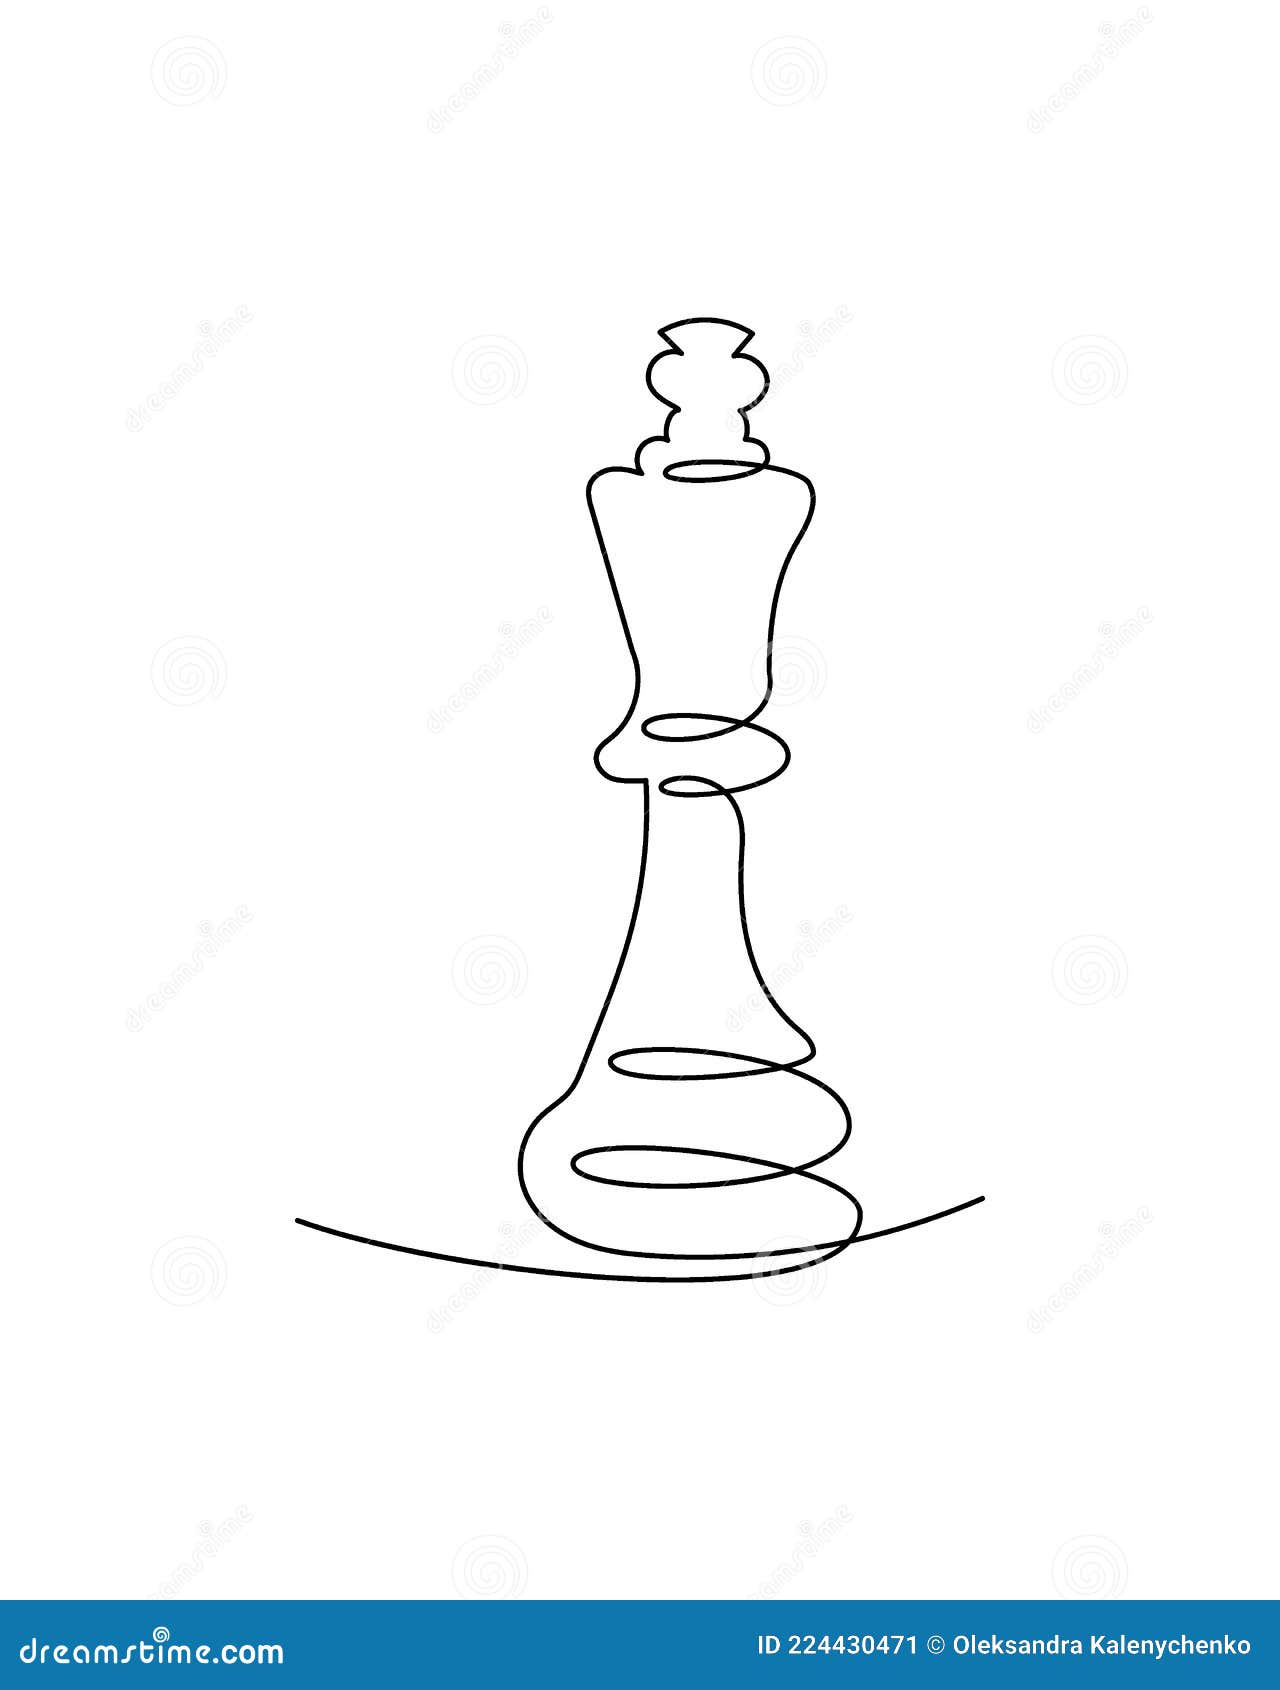 desenho de linha contínua de figuras de xadrez se movendo em